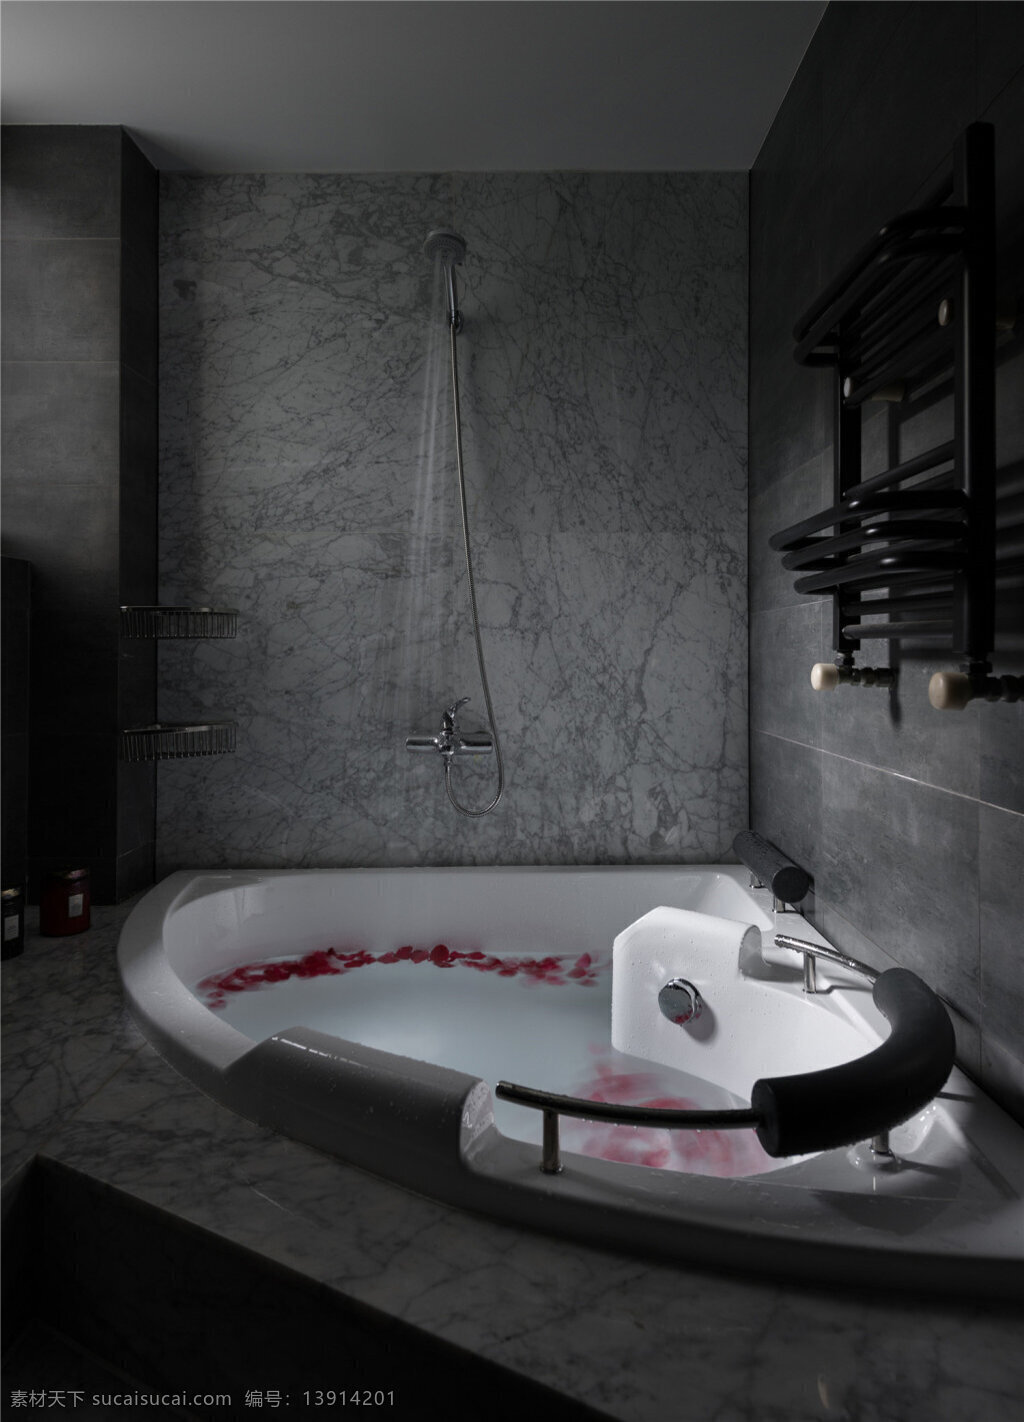 黑白 现代 卫浴 装修 效果图 现代风格 卫浴效果图 效果图图片 jpg图片 浴缸 淋浴花洒